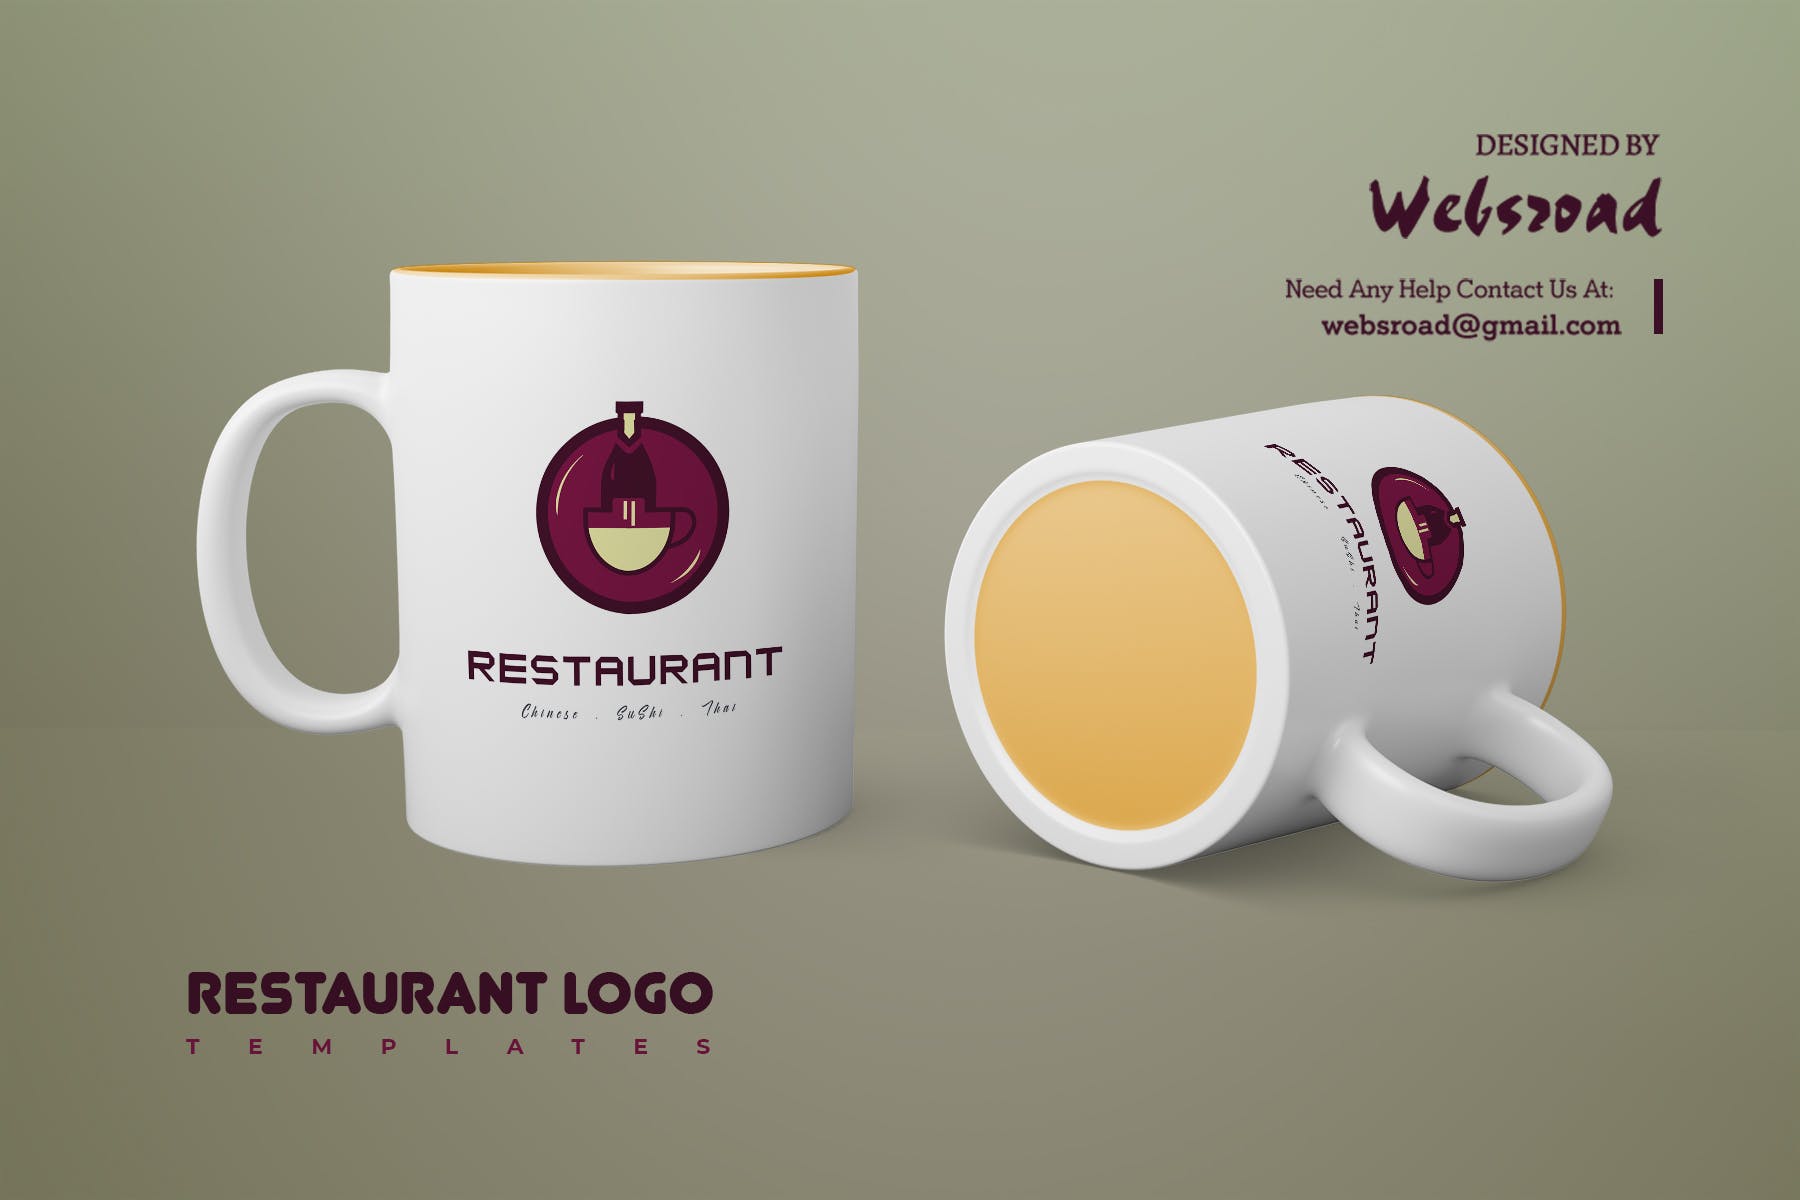 餐馆定制Logo设计非凡图库精选模板 Restaurant Logo Templates插图